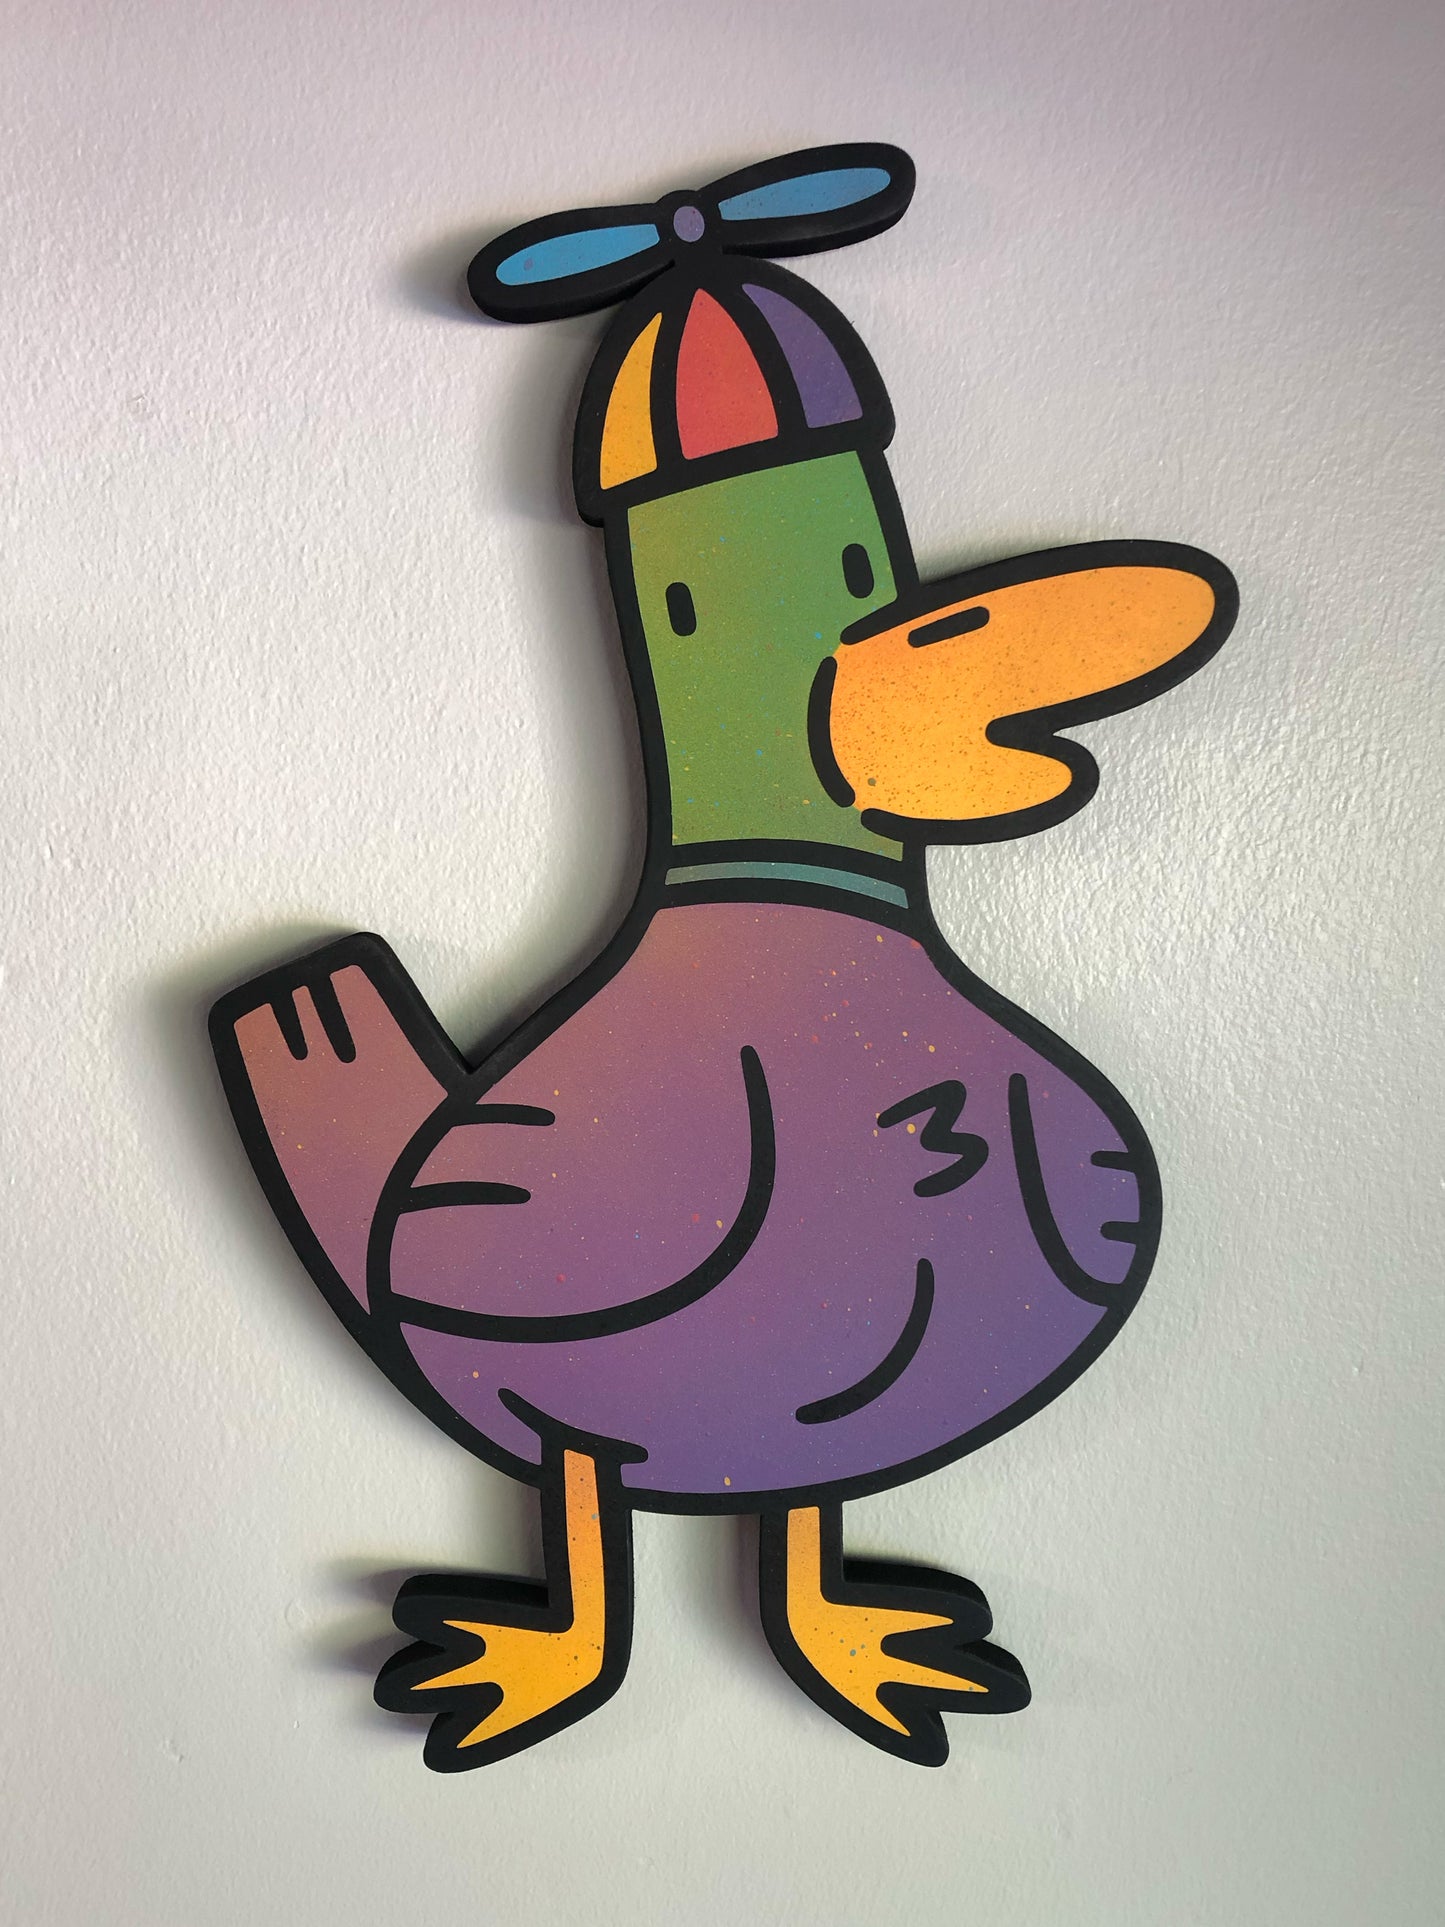 Propeller Doug (the Duck)